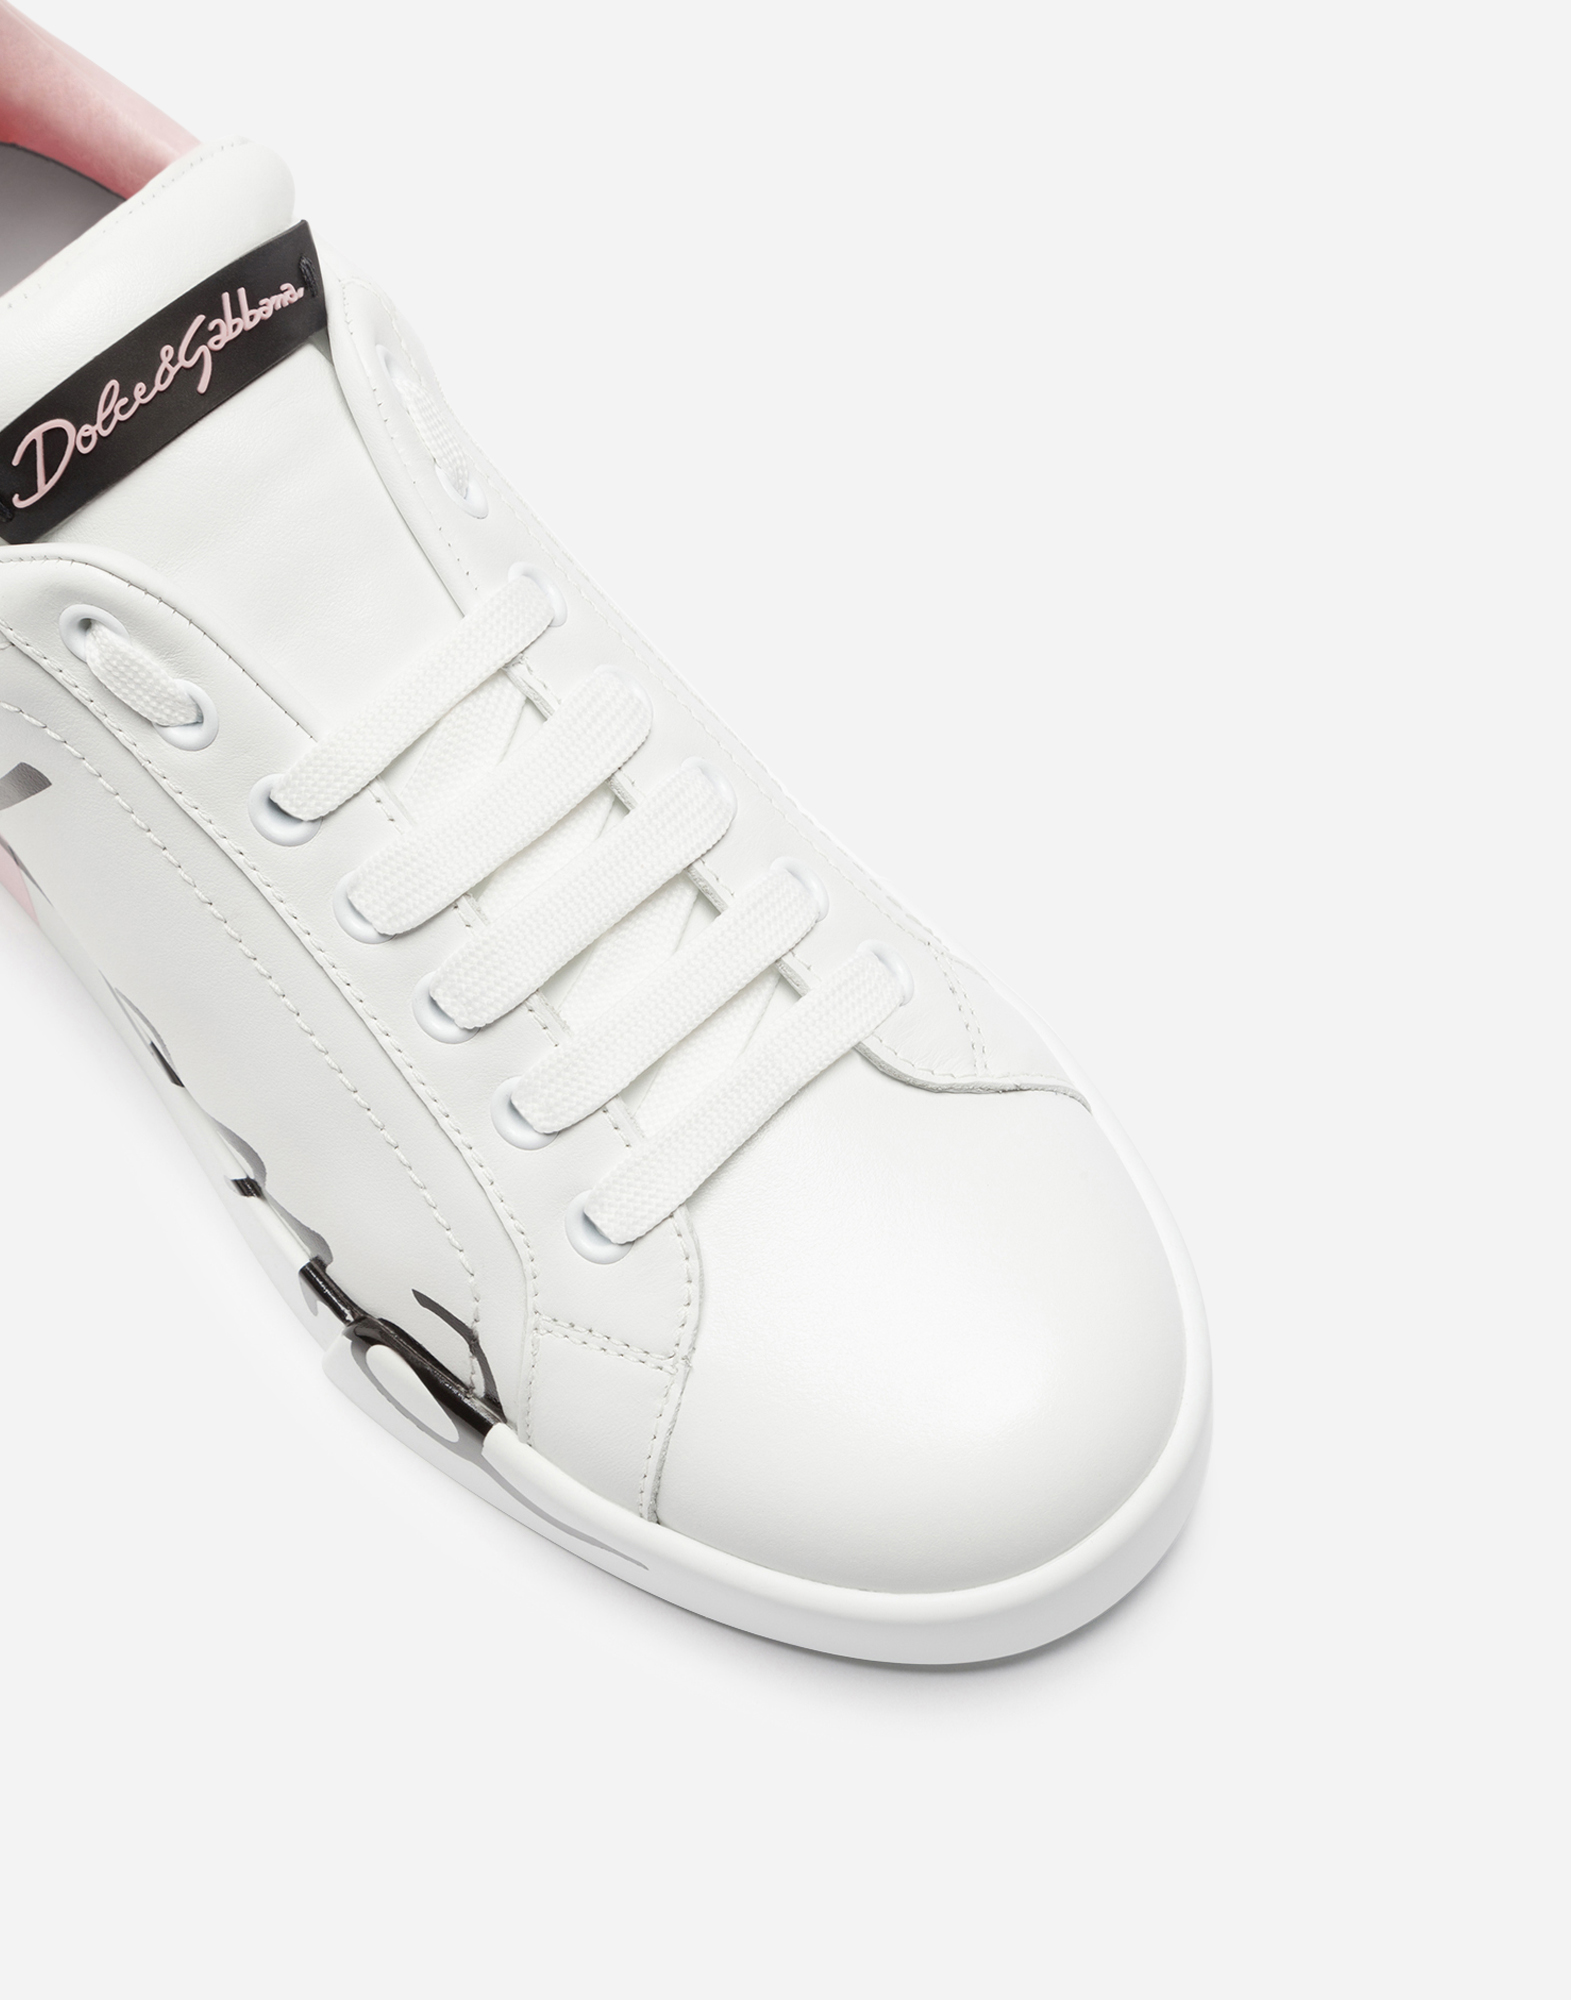 dolce & gabbana portofino leather sneakers